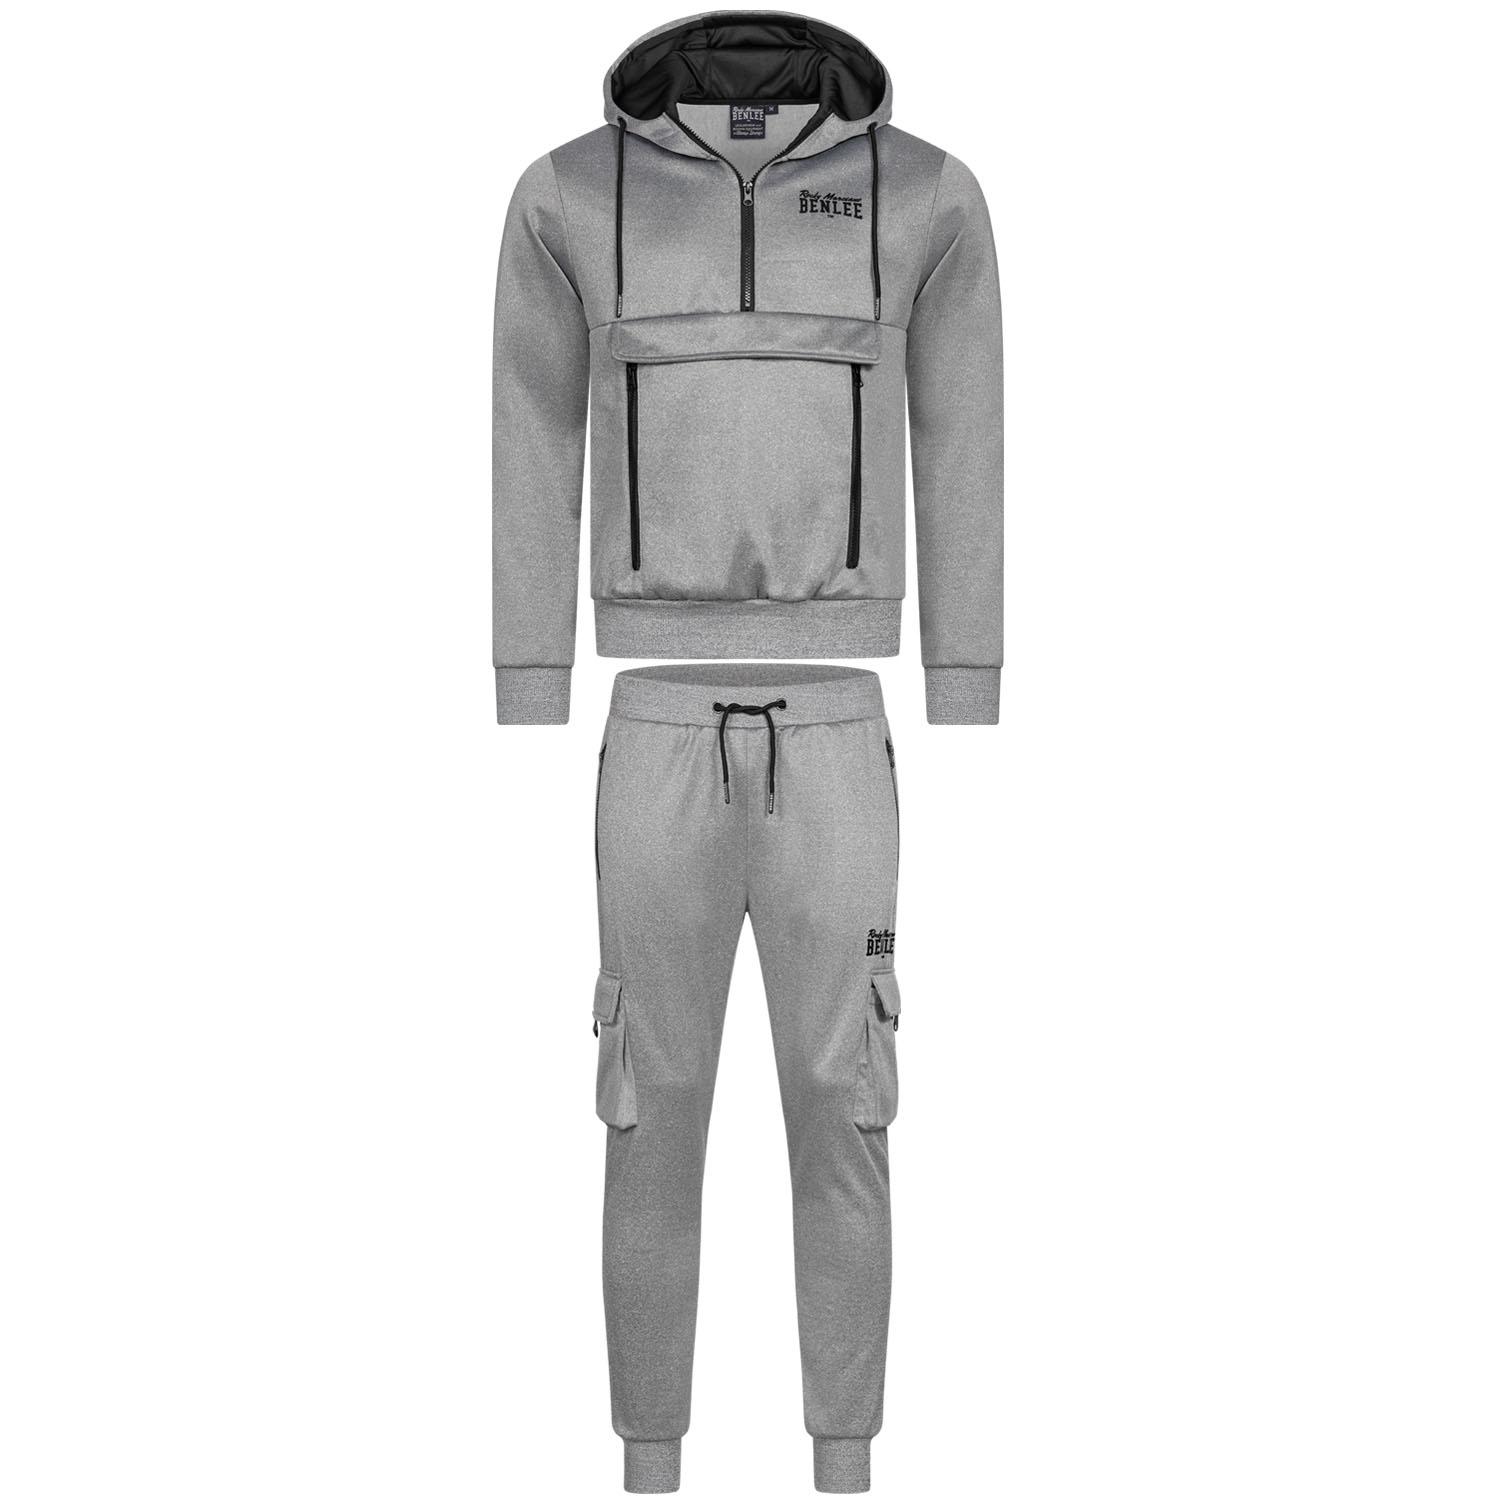 BENLEE Jogging Suit, Moorpark, grey, XXXL